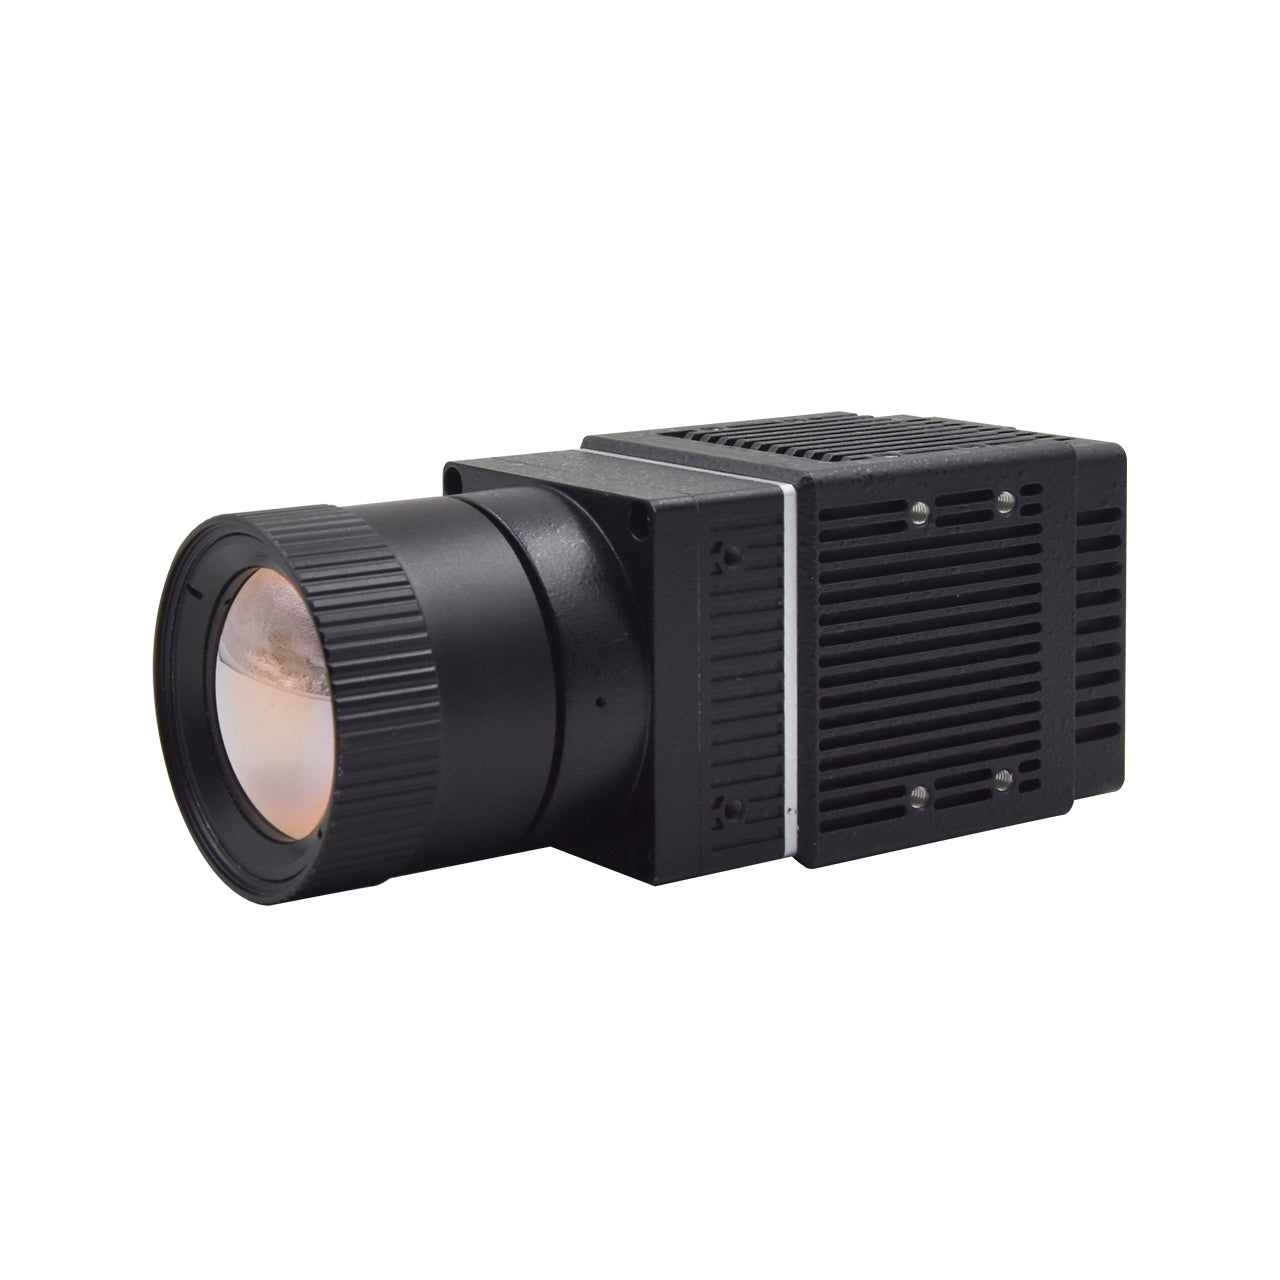 Неохлаждаемая тепловизионная камера LWIR для мониторинга безопасности, промышленное измерение температуры, дополнительный объектив 